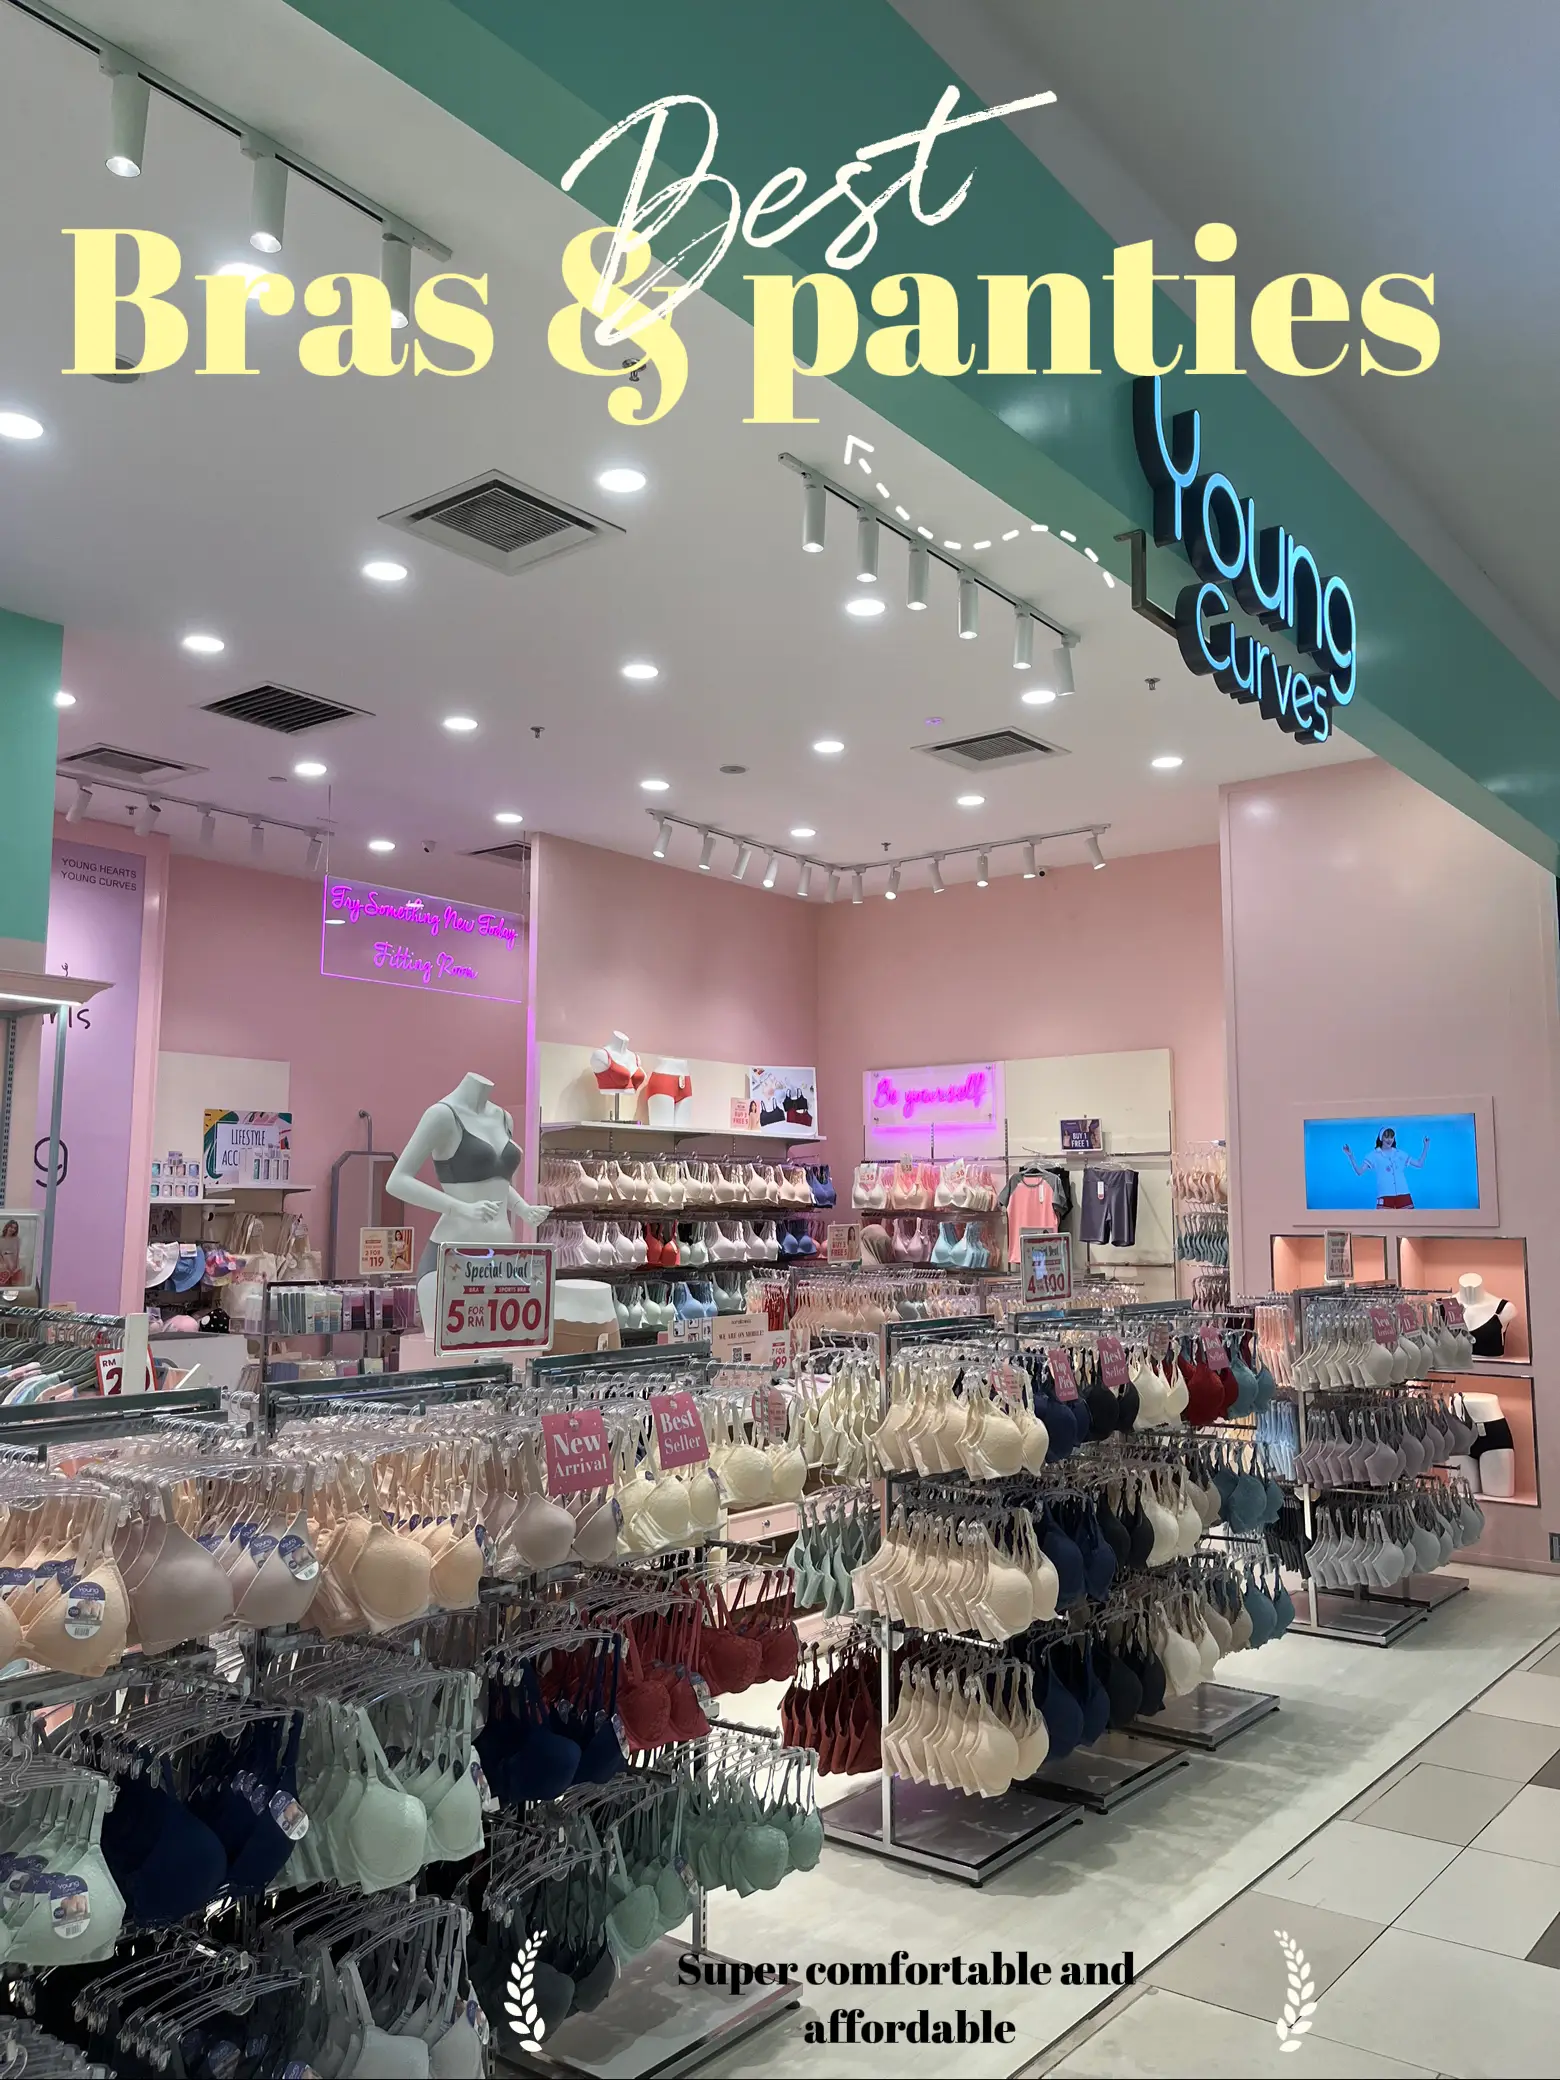 Affordable store bras and panties, Galeri disiarkan oleh izzah syazwani